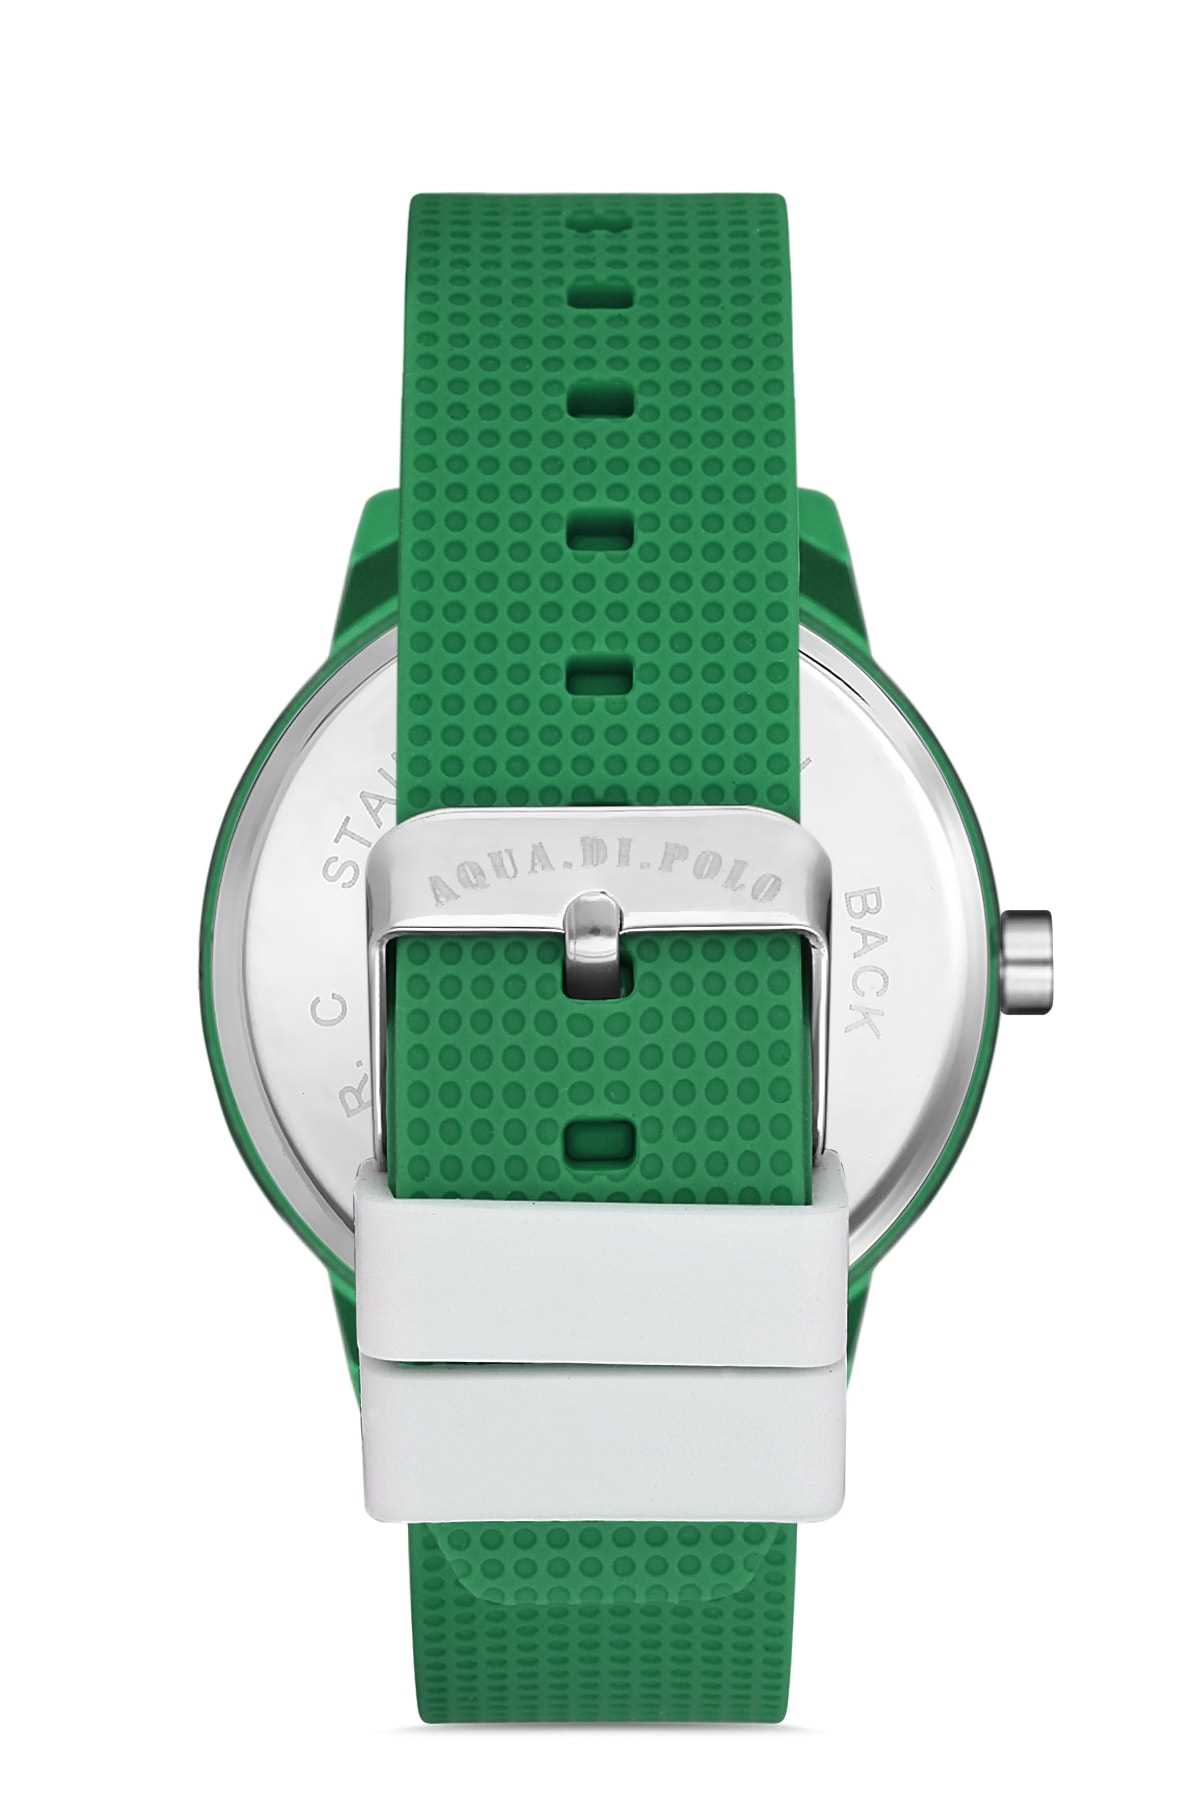 ساعت مردانه قیمت مناسب برند Aqua Di Polo 1987 رنگ سبز کد ty32430551